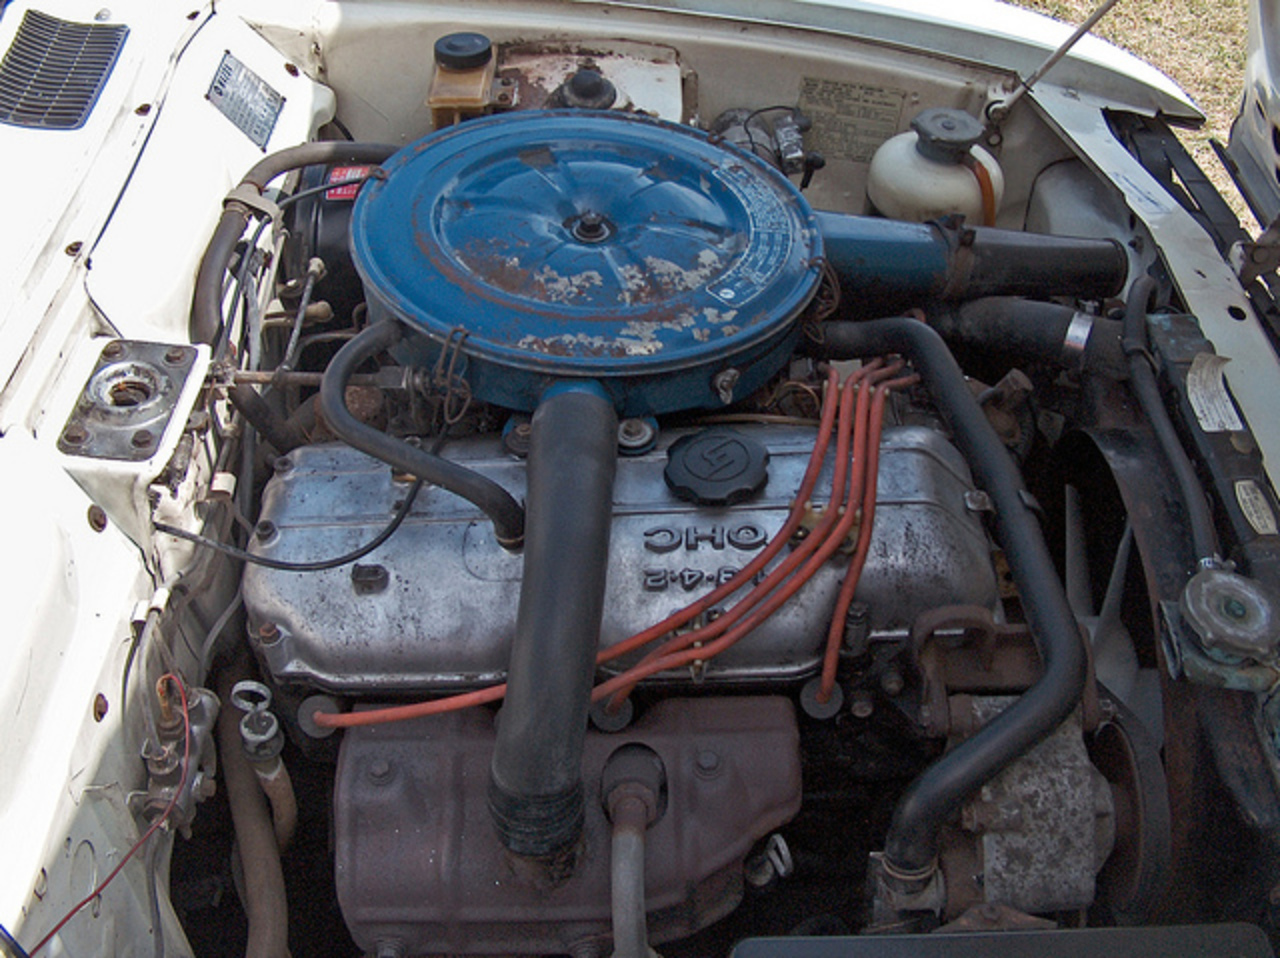 1971 Mazda 616 Coupe engine | Flickr - Photo Sharing!